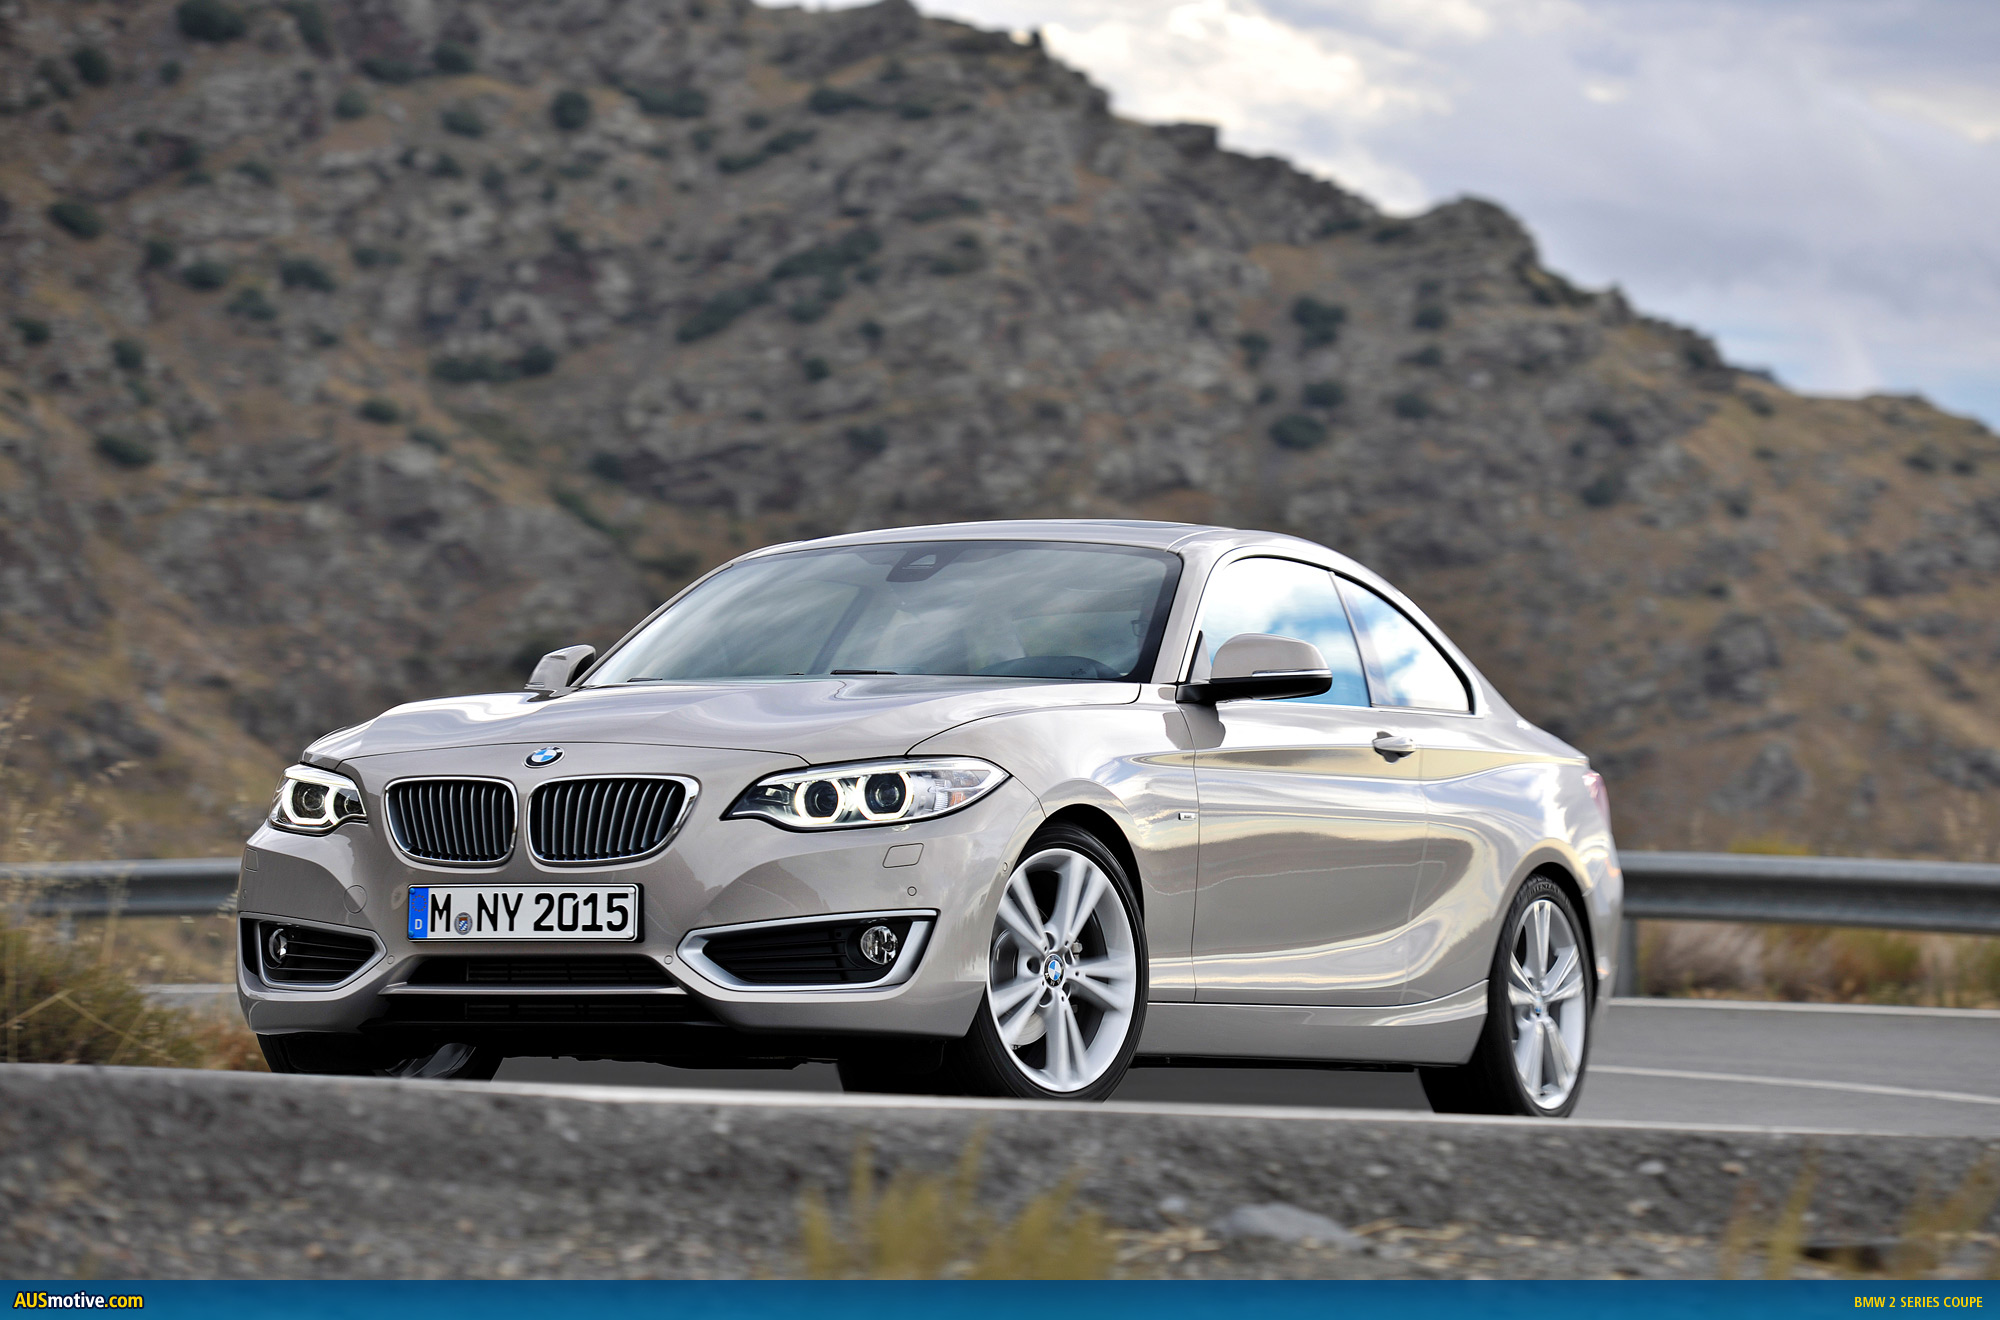 AUSmotive.com » BMW Australia to price M235i from $79,900